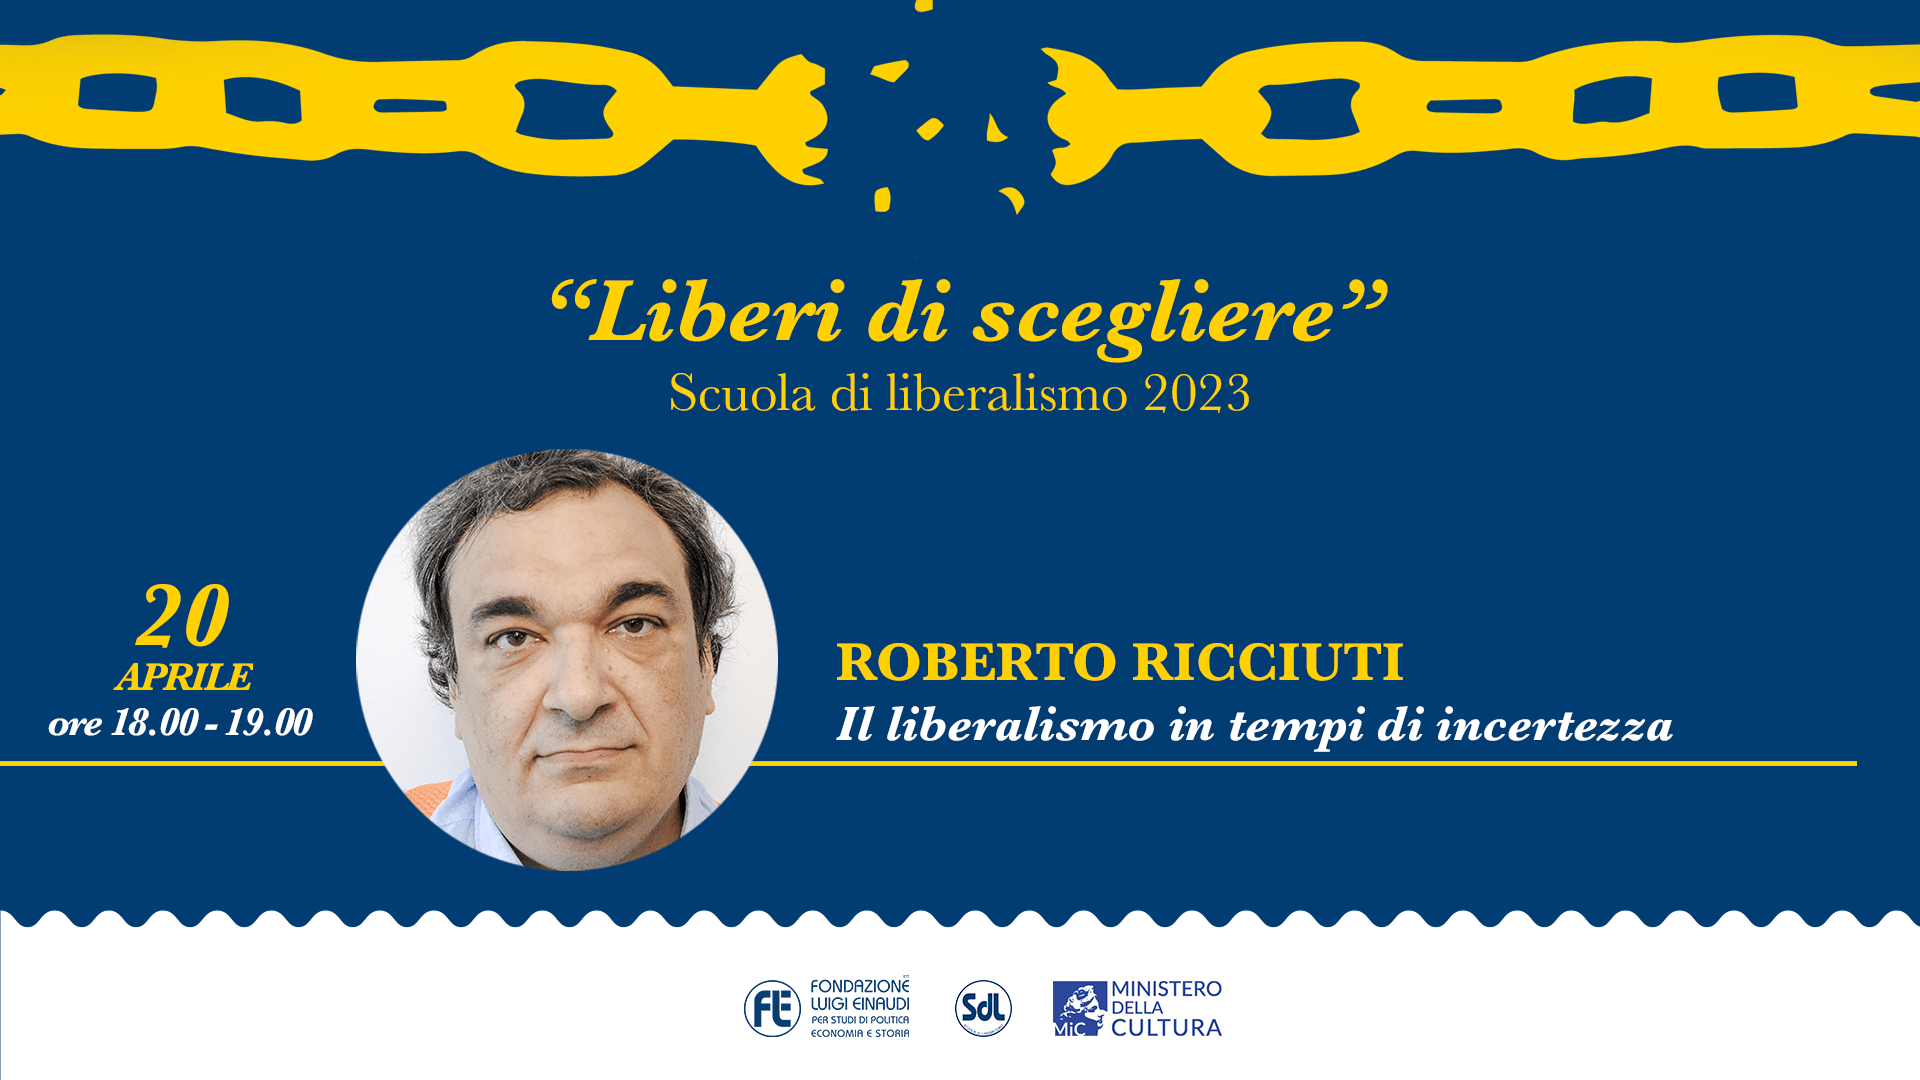 Scuola di Liberalismo 2023 – Roberto Ricciuti, Il liberalismo in tempi di incertezza